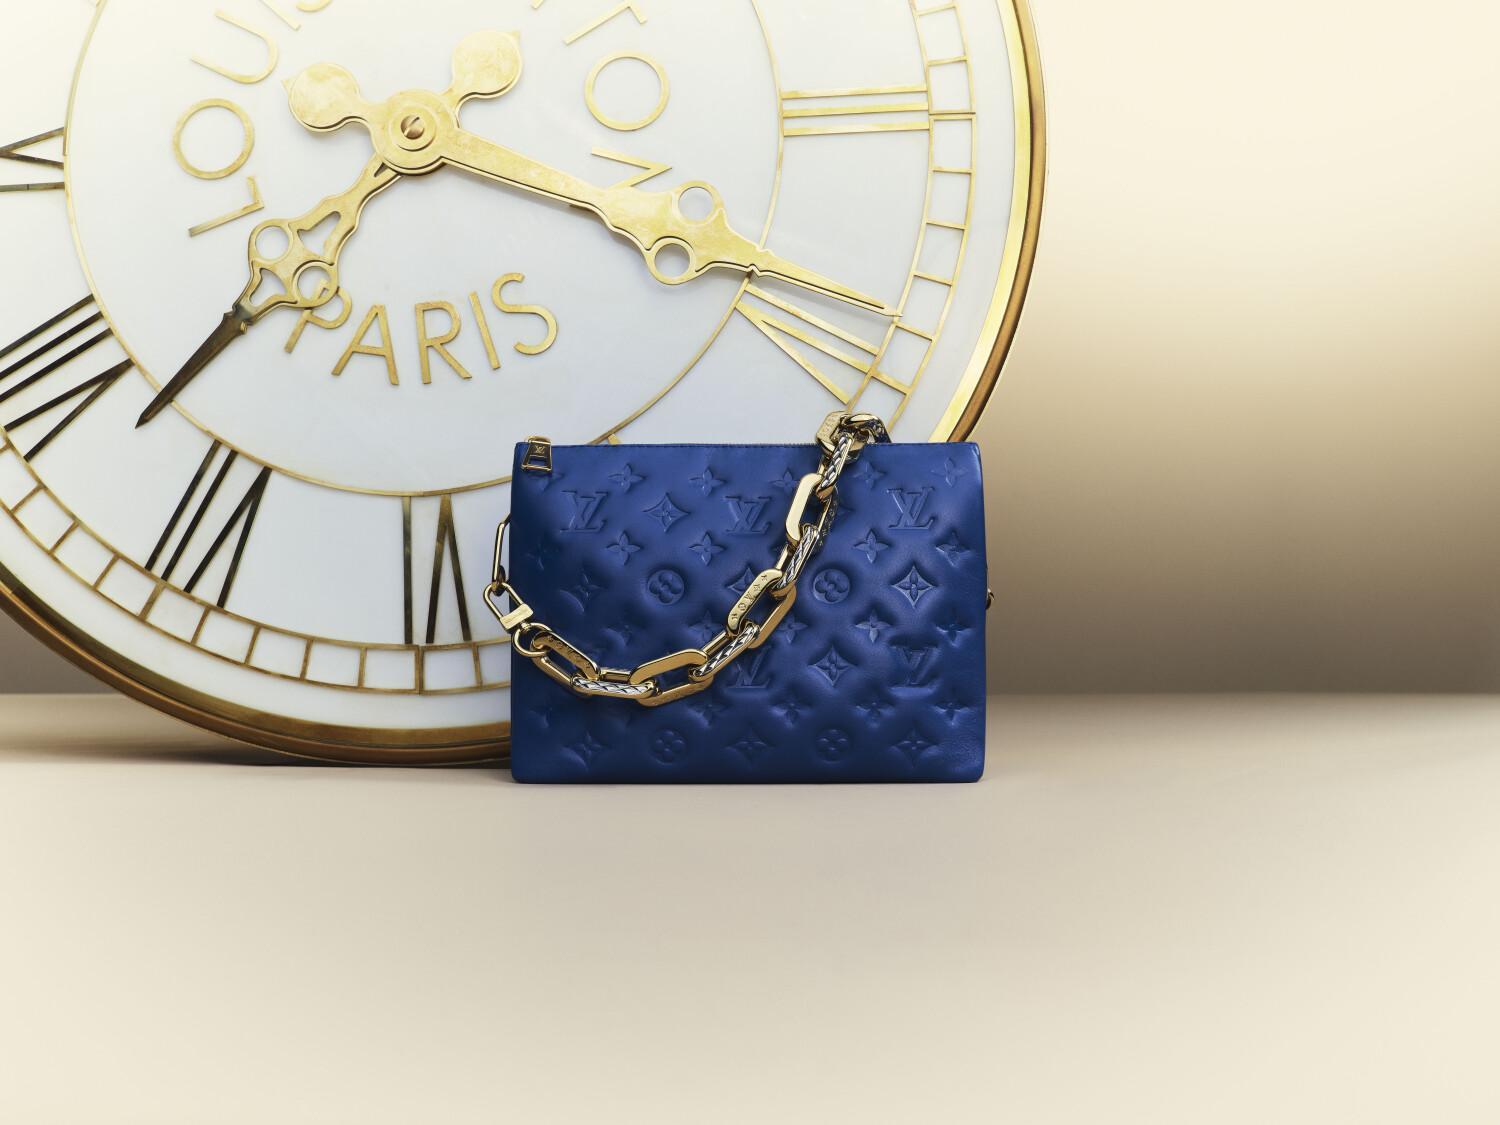 Louis Vuitton giới thiệu vũ trụ quà tặng đa sắc màu cho mùa lễ hội - Ảnh 5.